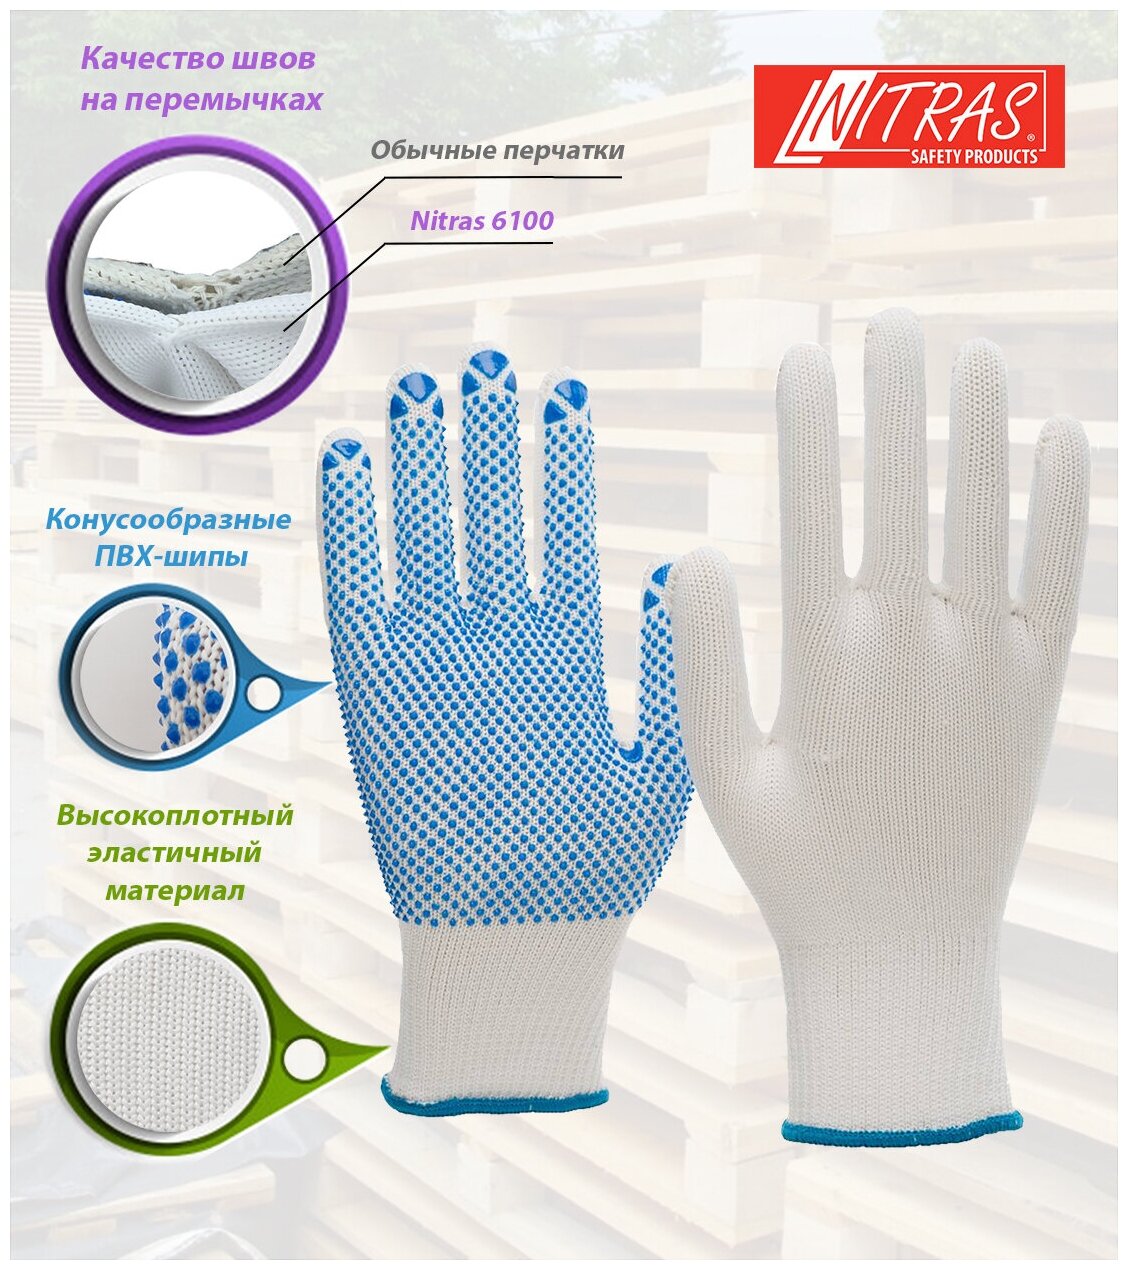 Набор из 2-х пар трикотажных защитных перчаток NITRAS 6100, с точками (точечным ПВХ покрытием) Германия, размер 10